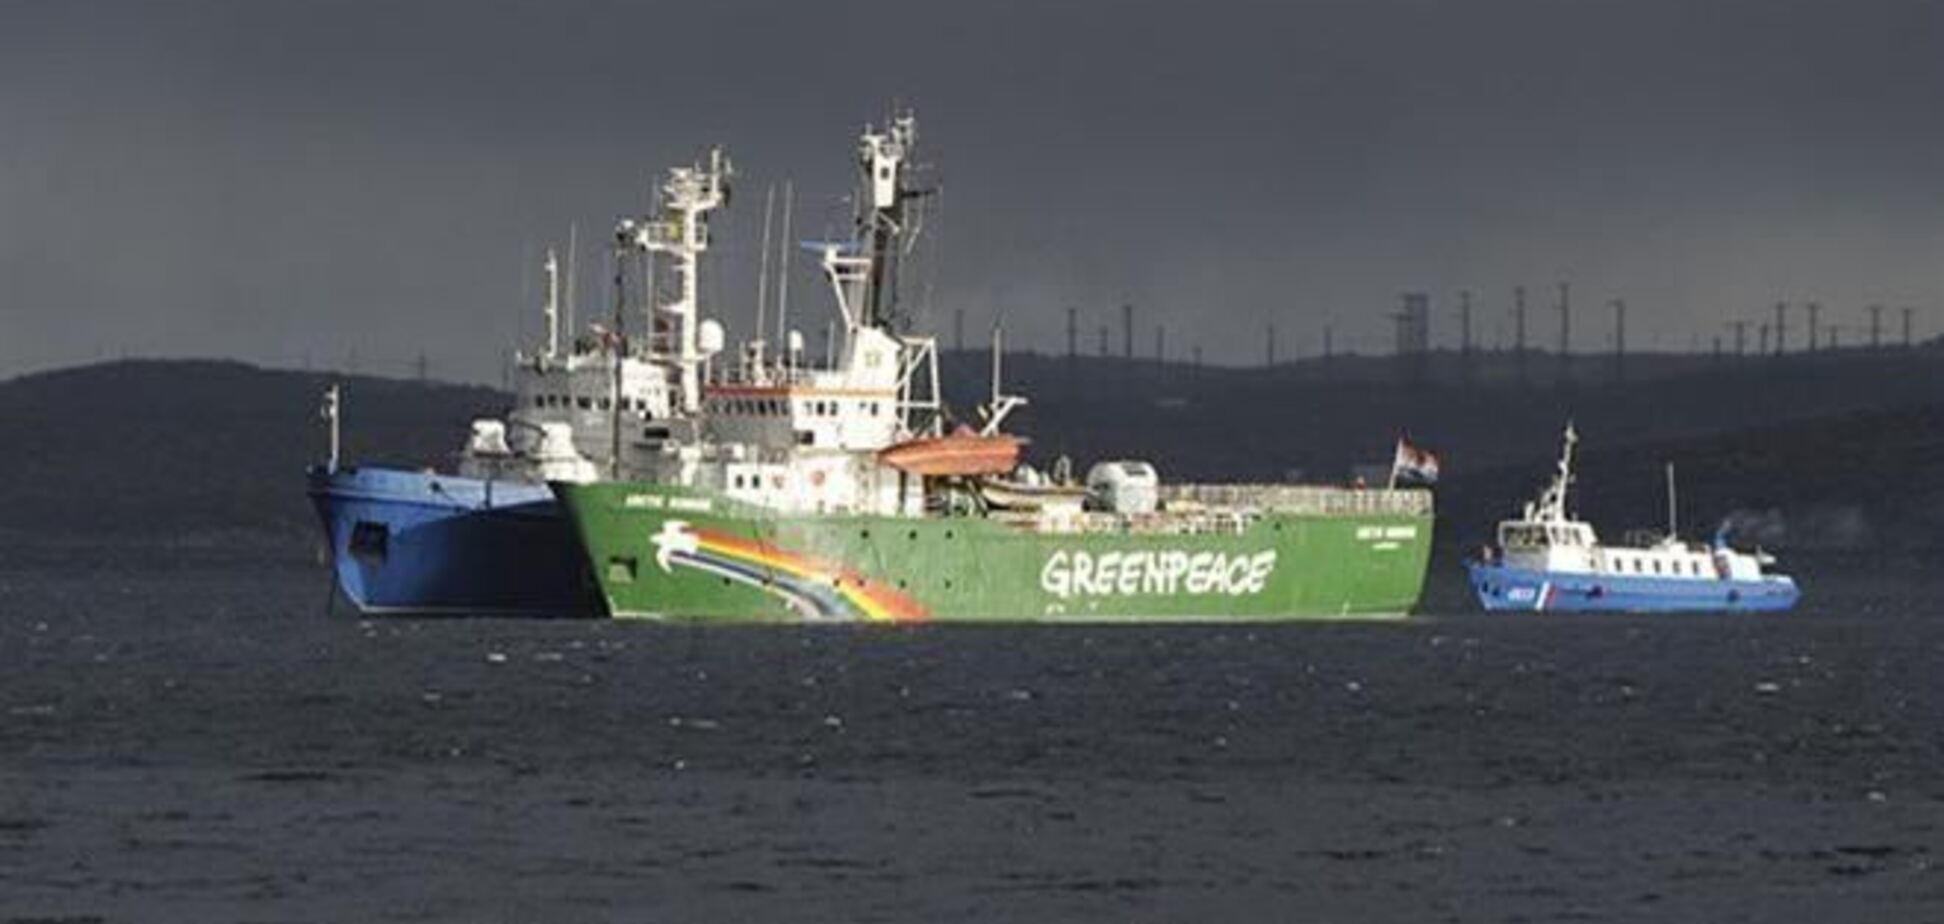 Активистам Greenpeace 2 октября предъявят обвинения в пиратстве - СМИ